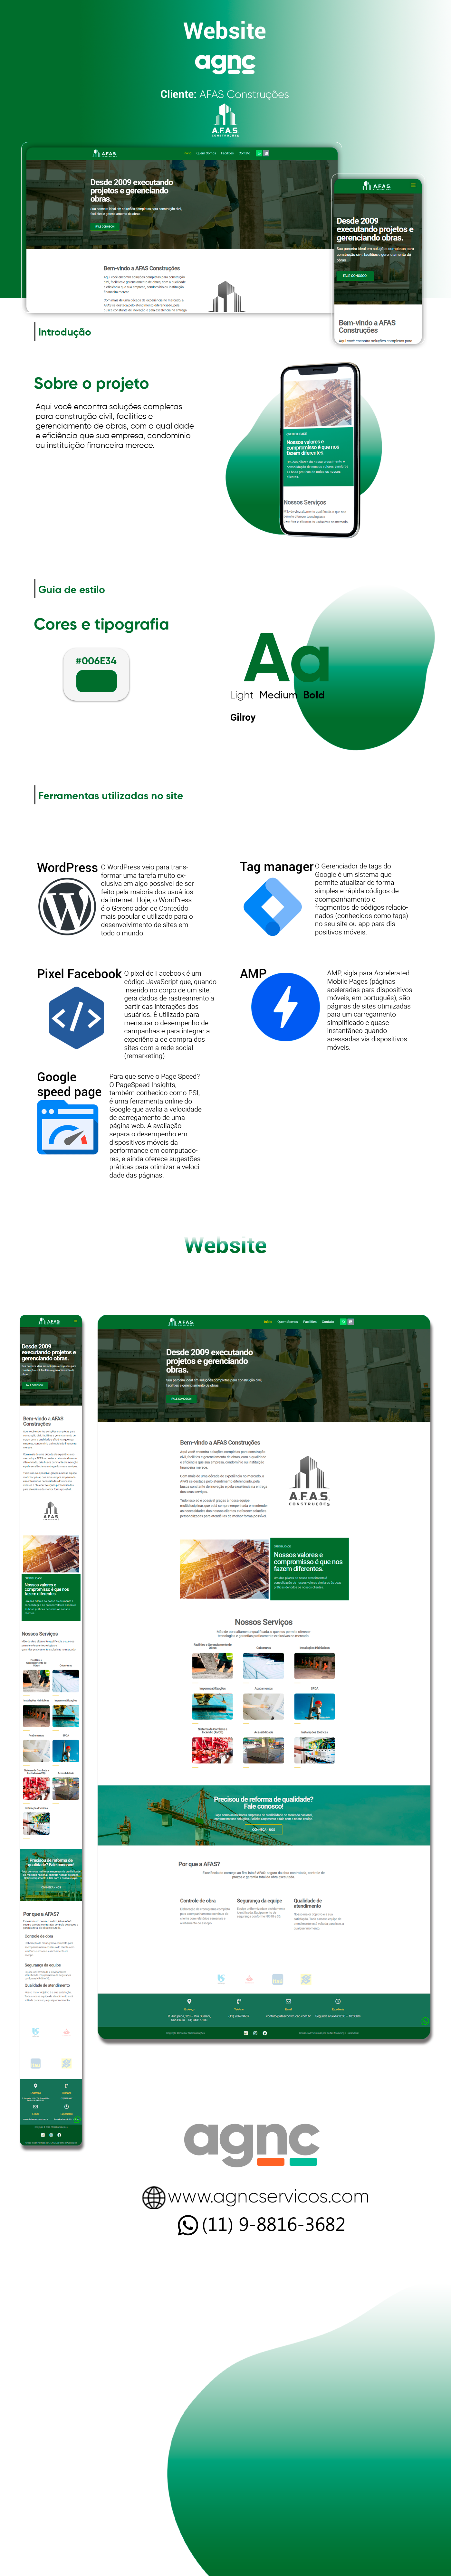 portifolio de site afas AGNC - Agência de Marketing